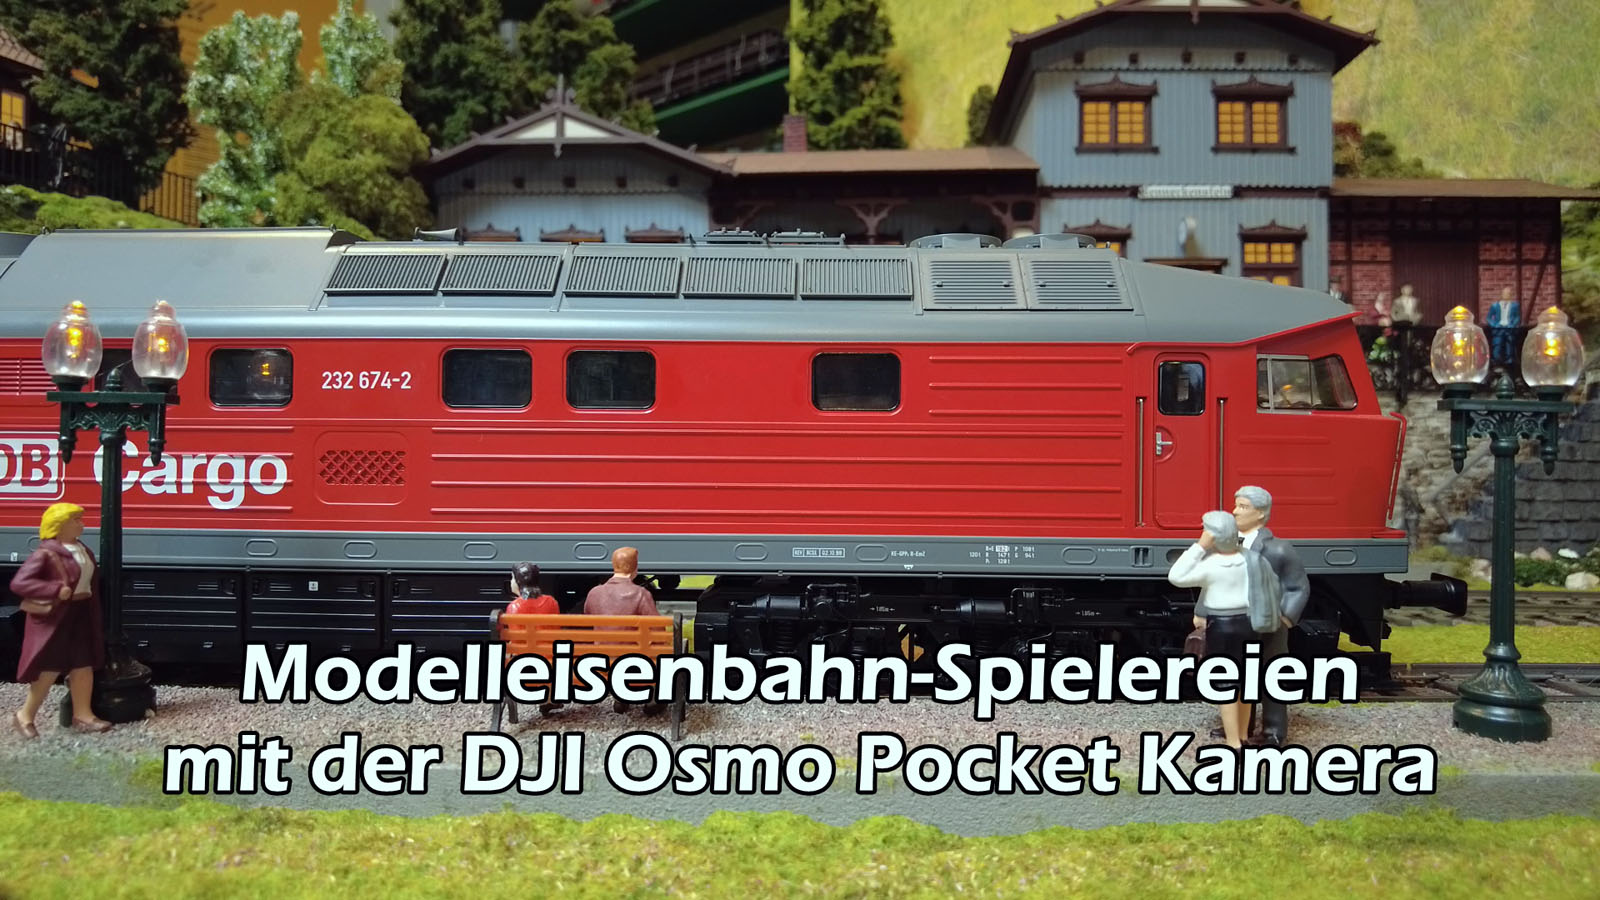 Spur 1 Modellbahn-Spielereien mit der DJI Osmo Pocket Kamera auf Arnolds Großanlage in Den Haag